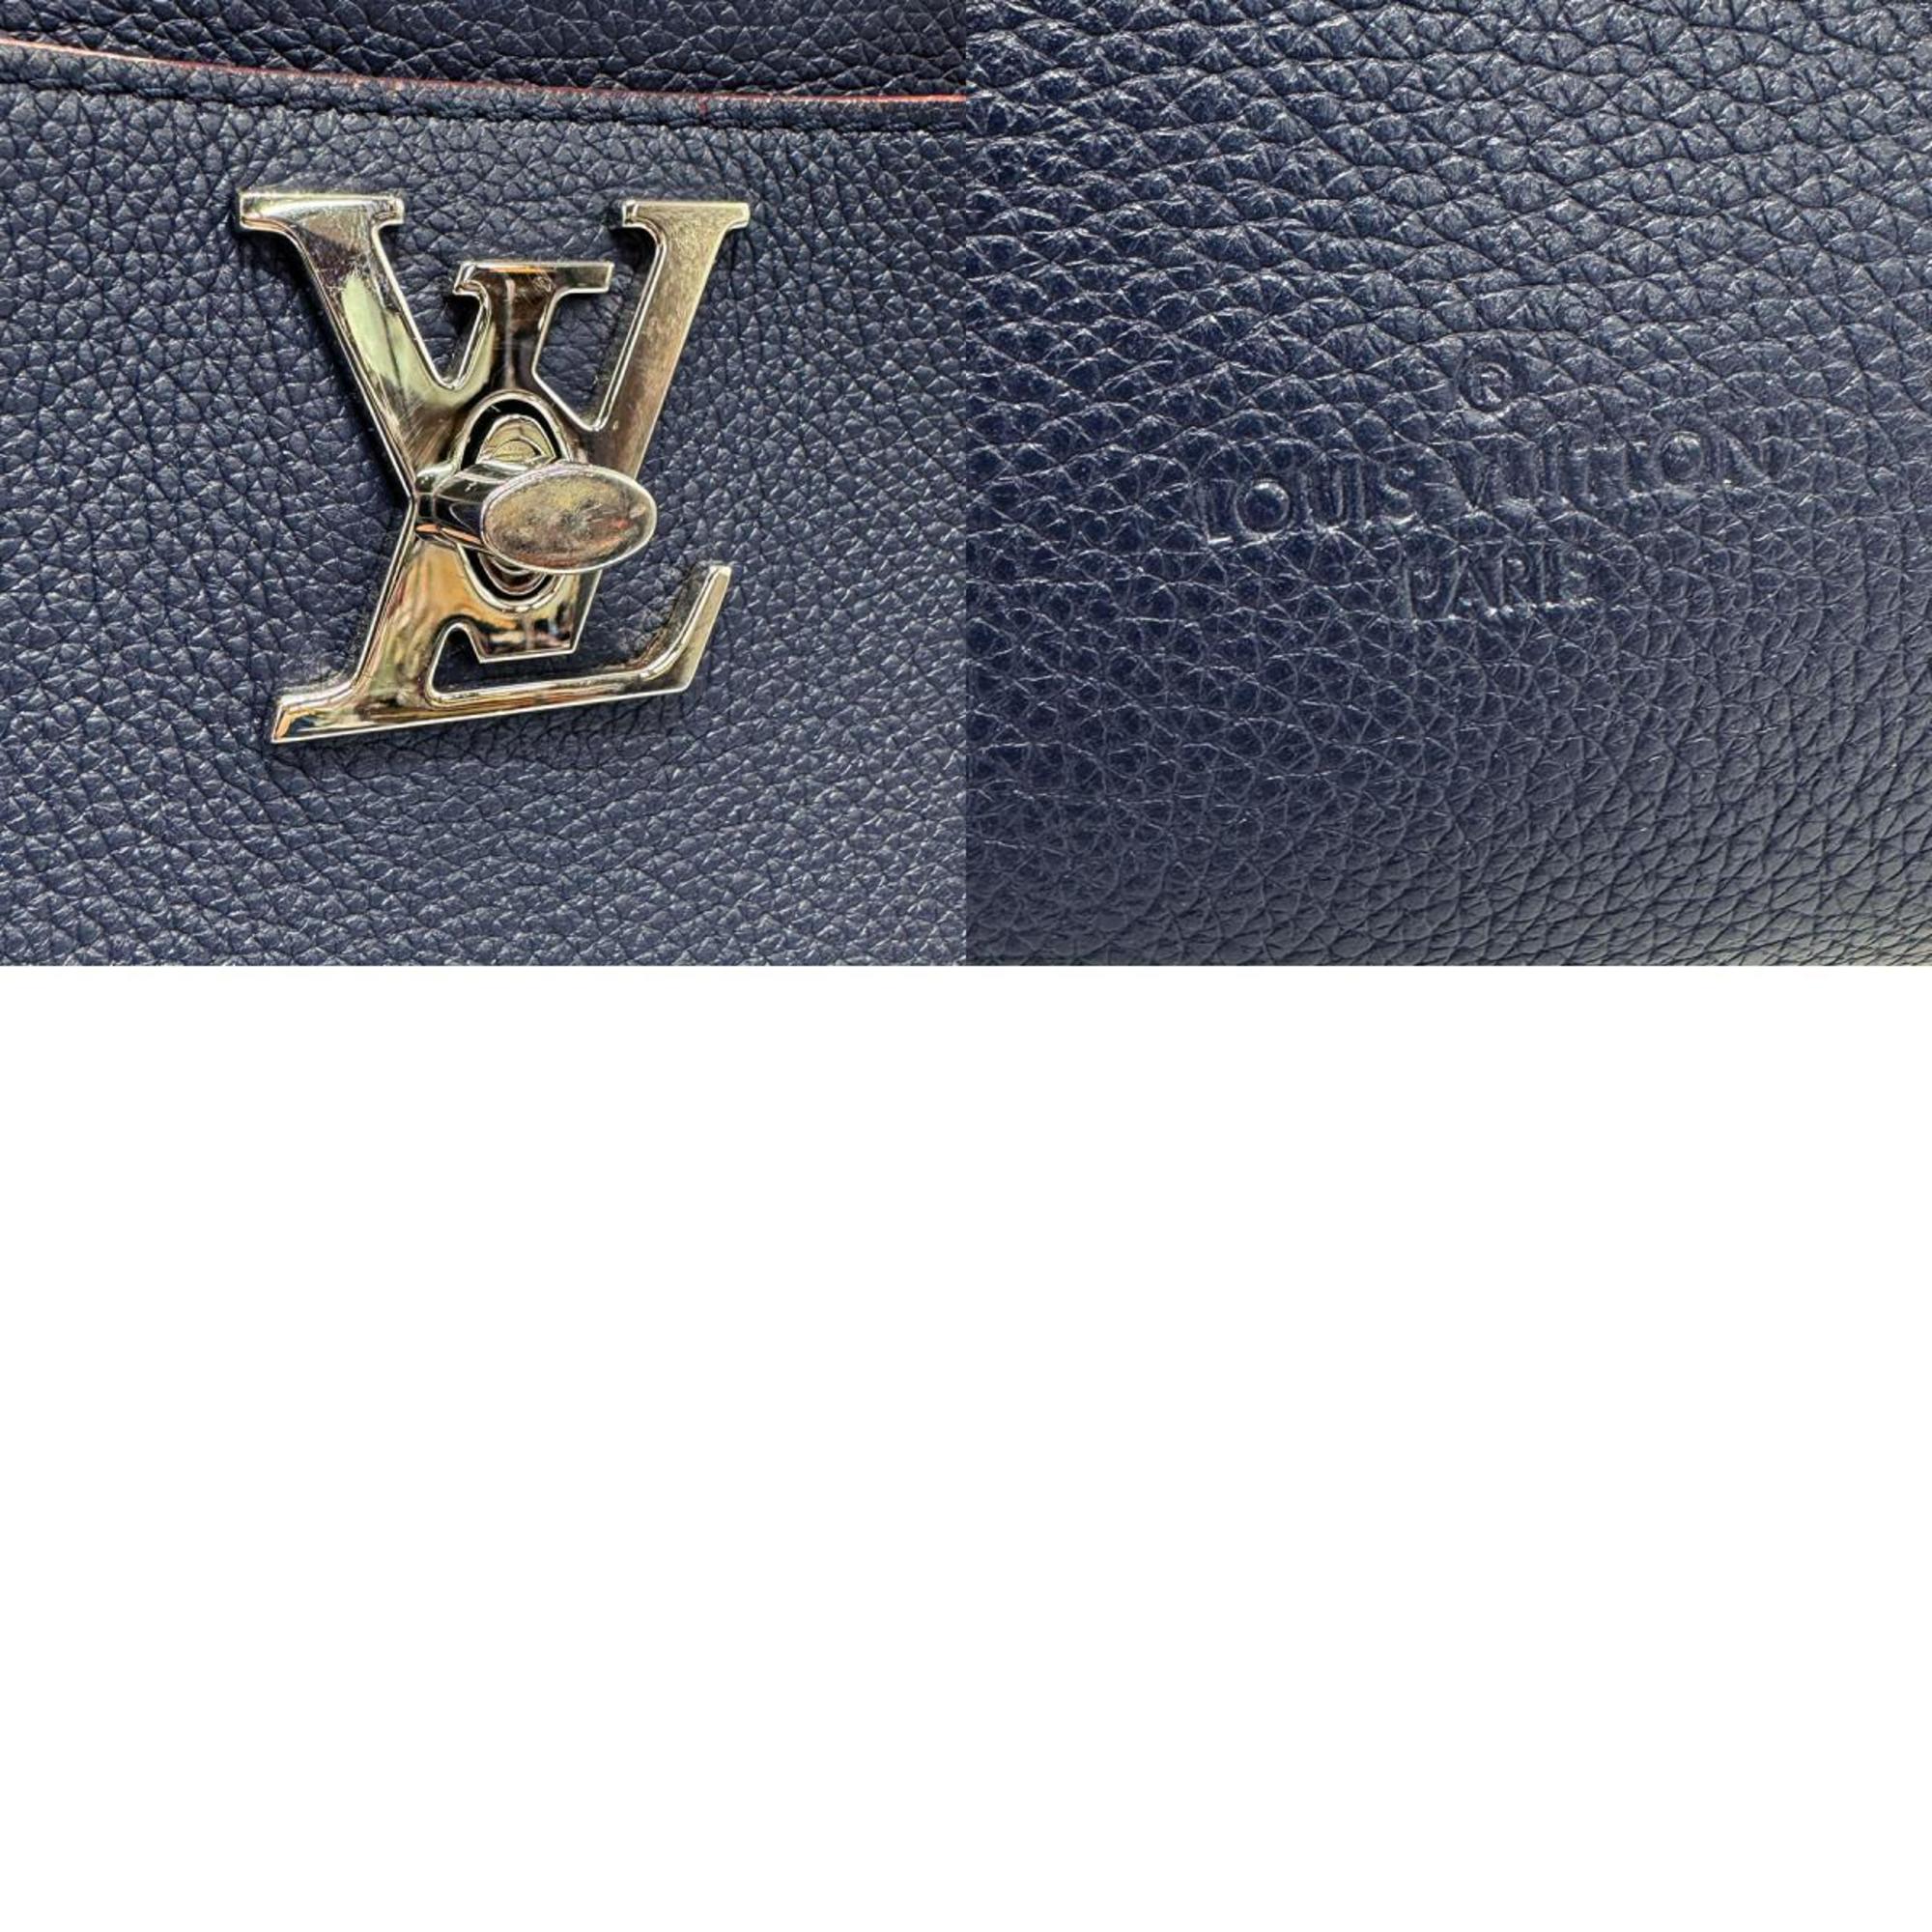 LOUIS VUITTON Shoulder Bag Handbag Rock Meat Leather Marine Rouge Women's M54571 z0982